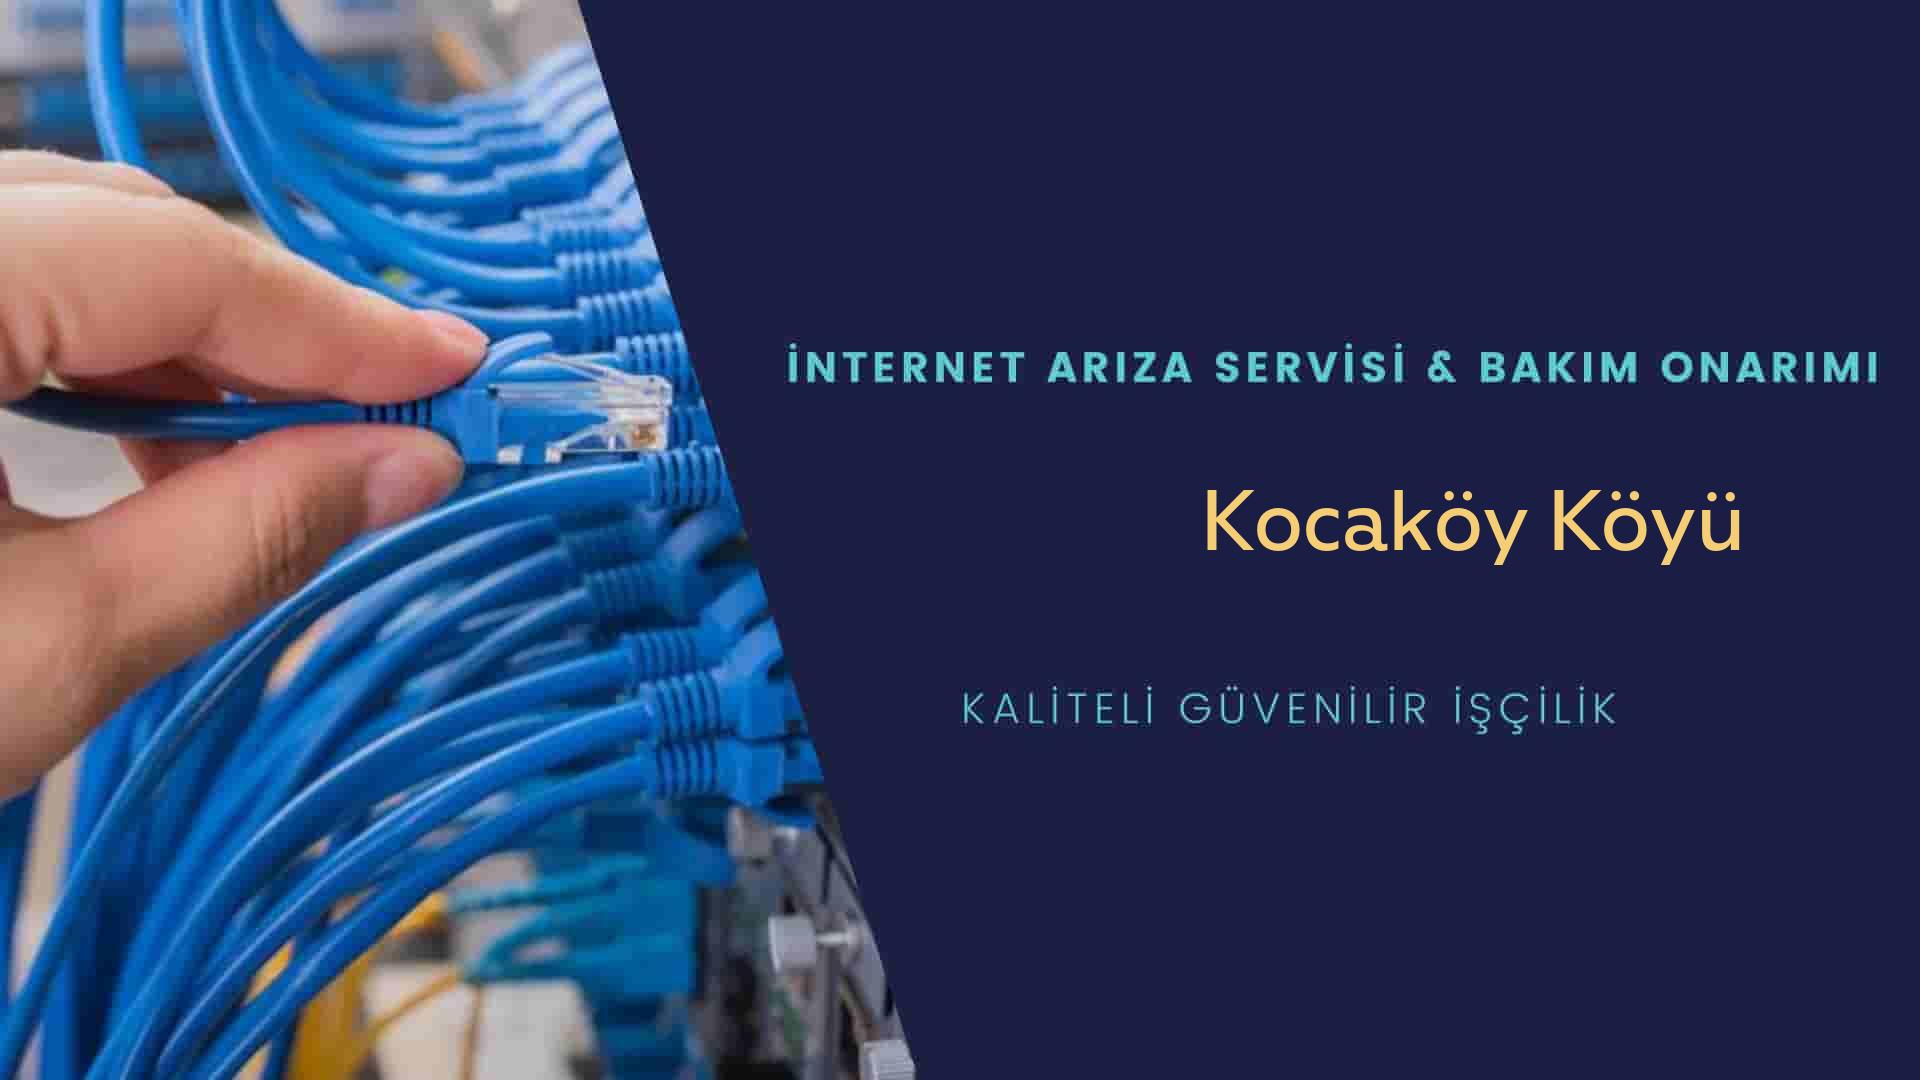 Kocaköy Köyü internet kablosu çekimi yapan yerler veya elektrikçiler mi? arıyorsunuz doğru yerdesiniz o zaman sizlere 7/24 yardımcı olacak profesyonel ustalarımız bir telefon kadar yakındır size.